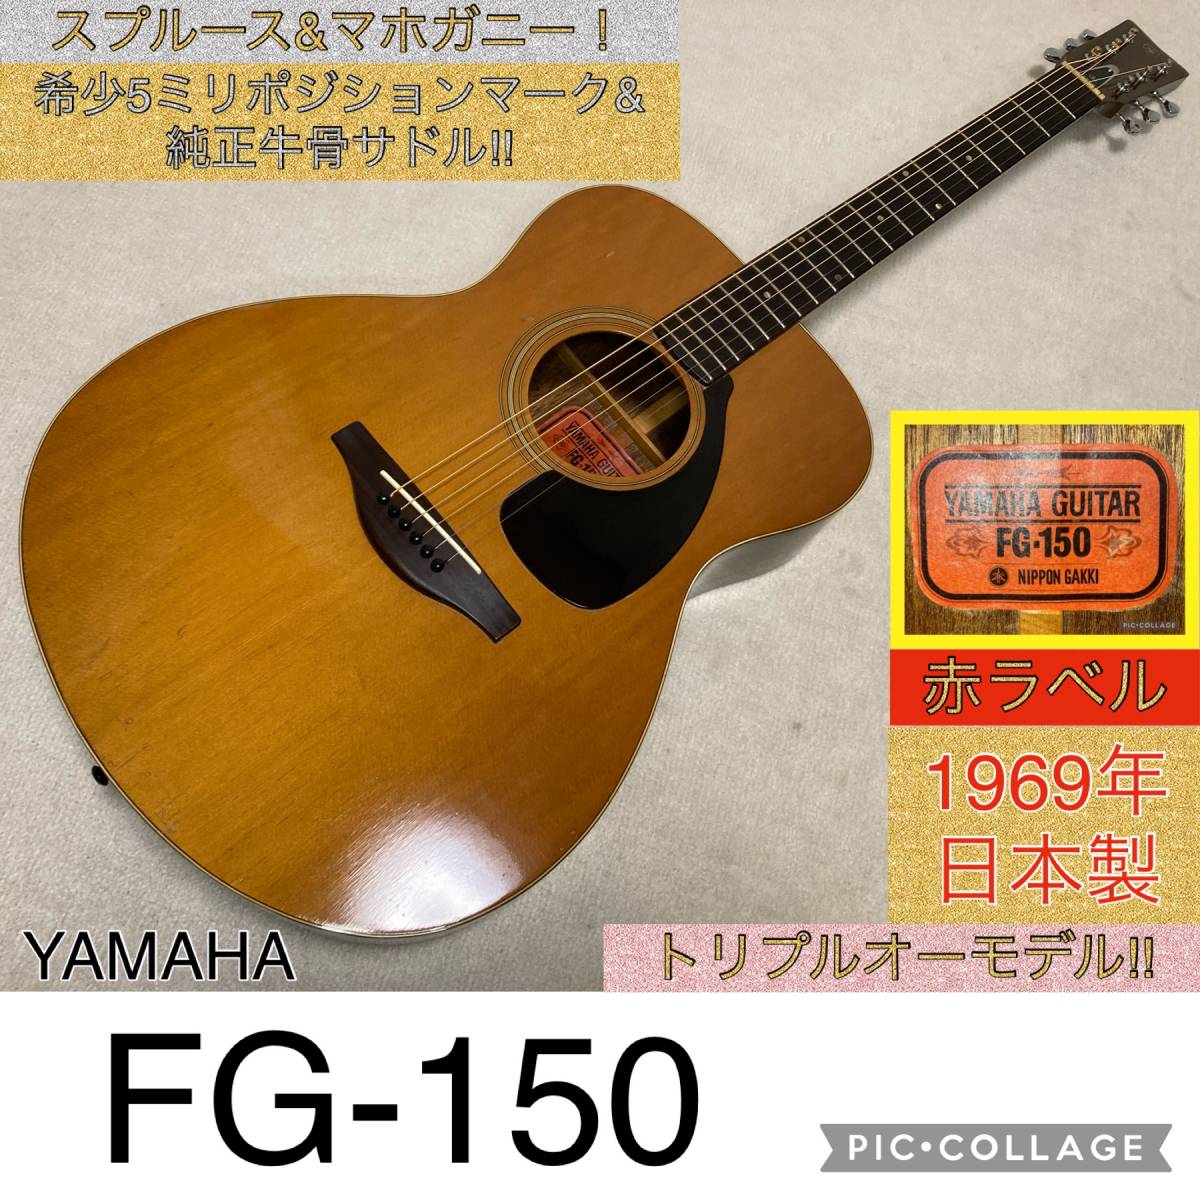 ヤフオク! -「yamaha fg-150 赤ラベル」の落札相場・落札価格